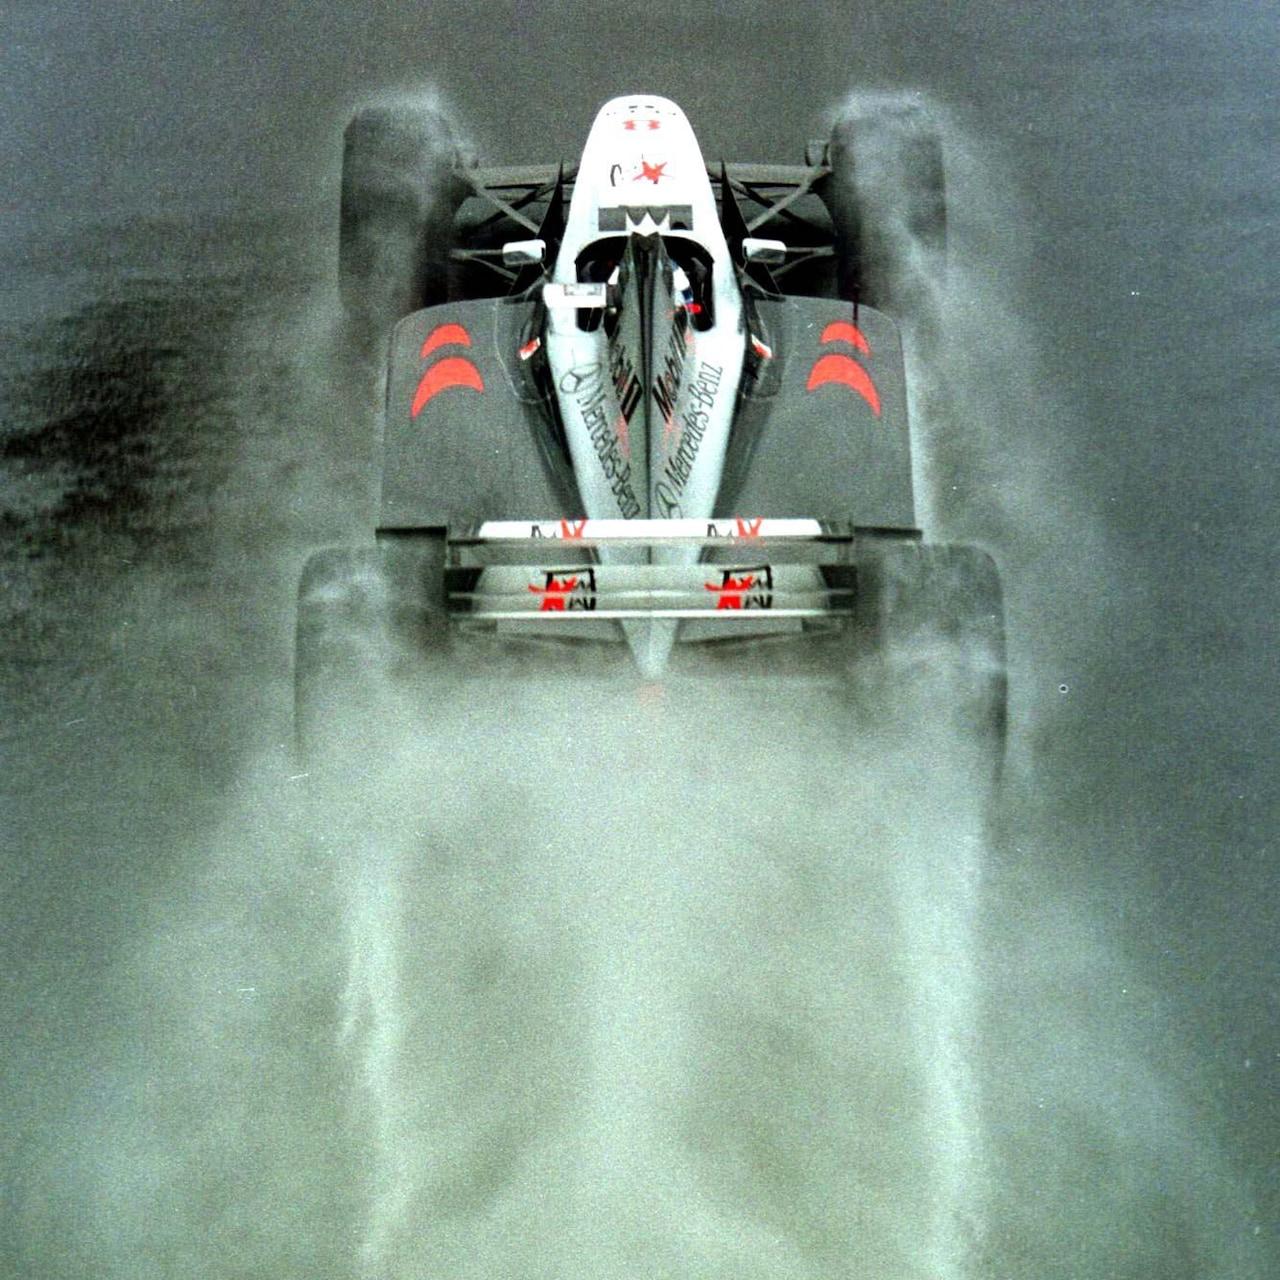 Mika Hakkinen in the wet [British GP '98]